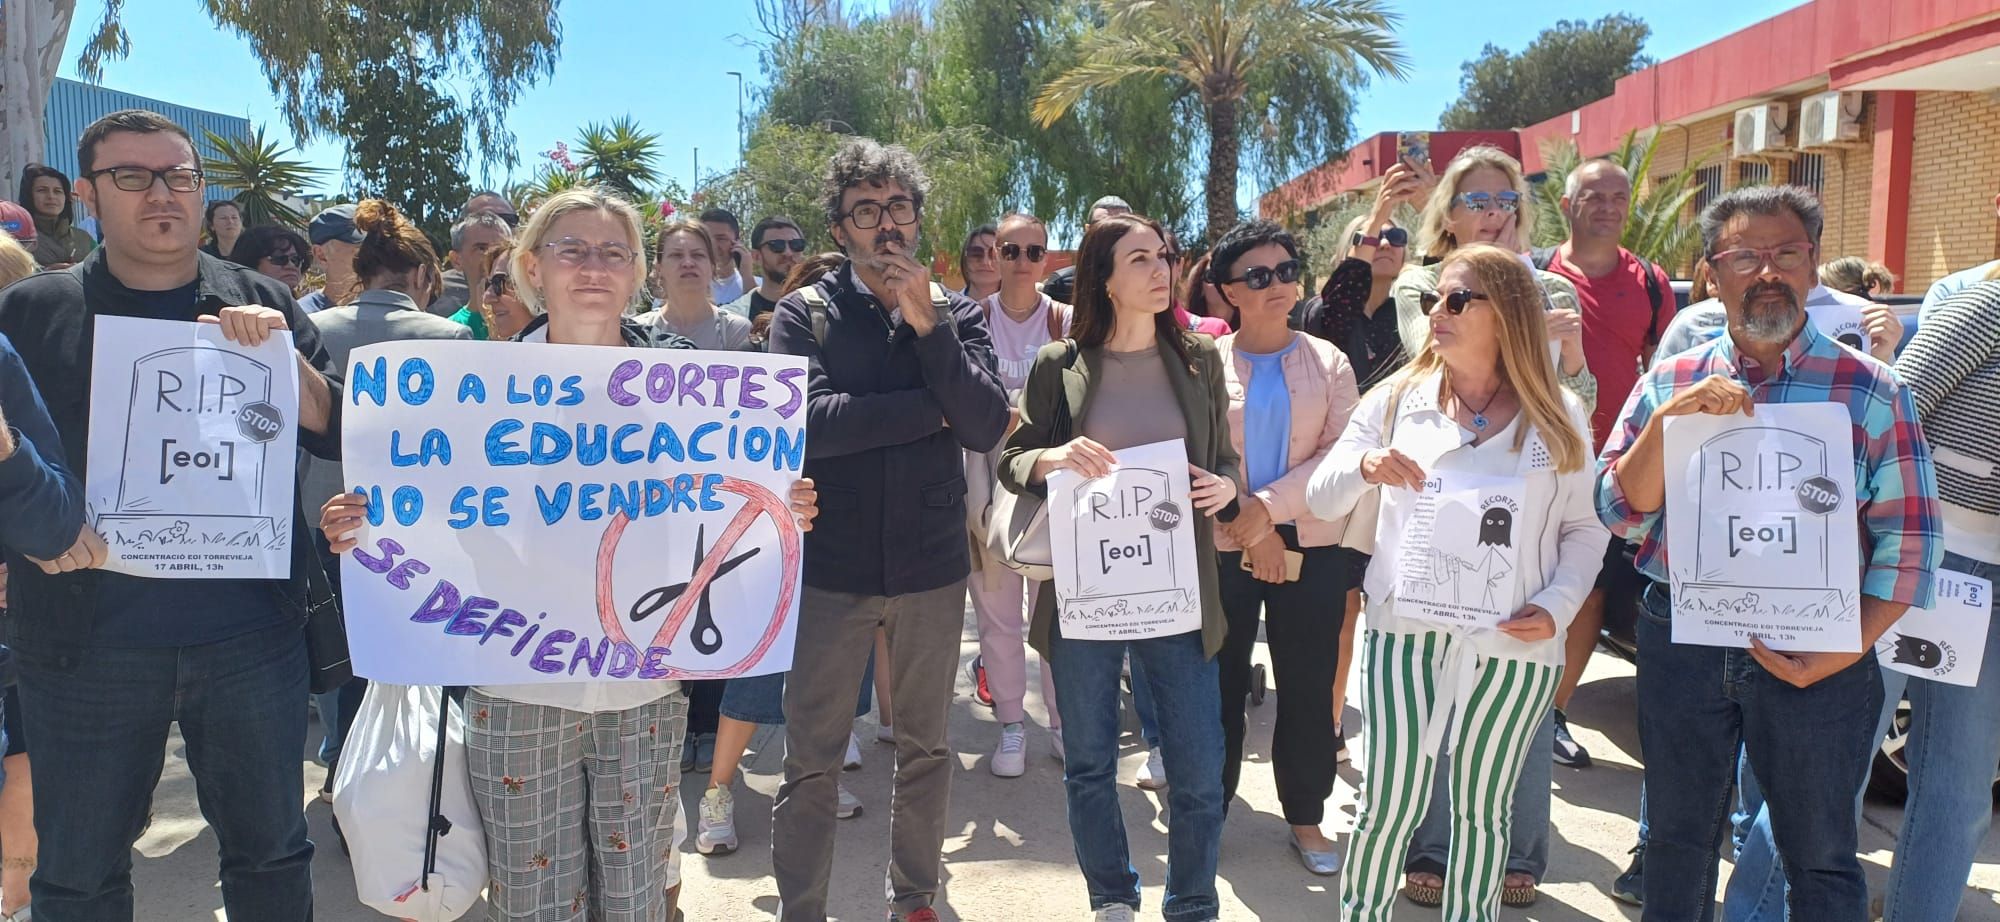 "Recortar no es integrar": docenas de alumnos de la Escuela Oficial de Idiomas de Torrevieja protestan contra el recorte de 760 plazas, la mayor parte para cursos de español